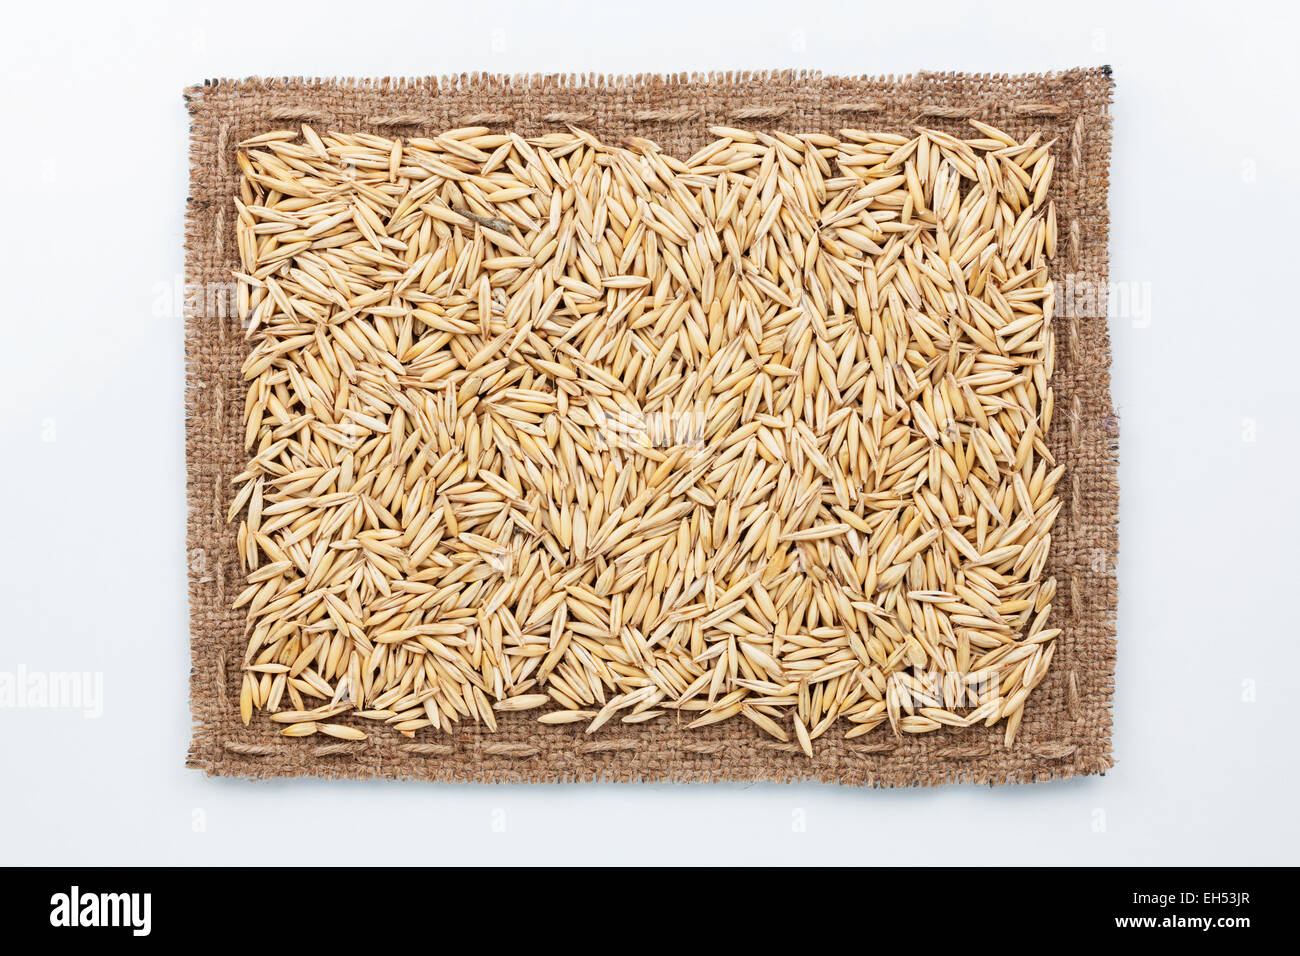 Rahmen aus Sackleinen und Hafer Korn, liegend auf einem weißen Hintergrund Stockfoto